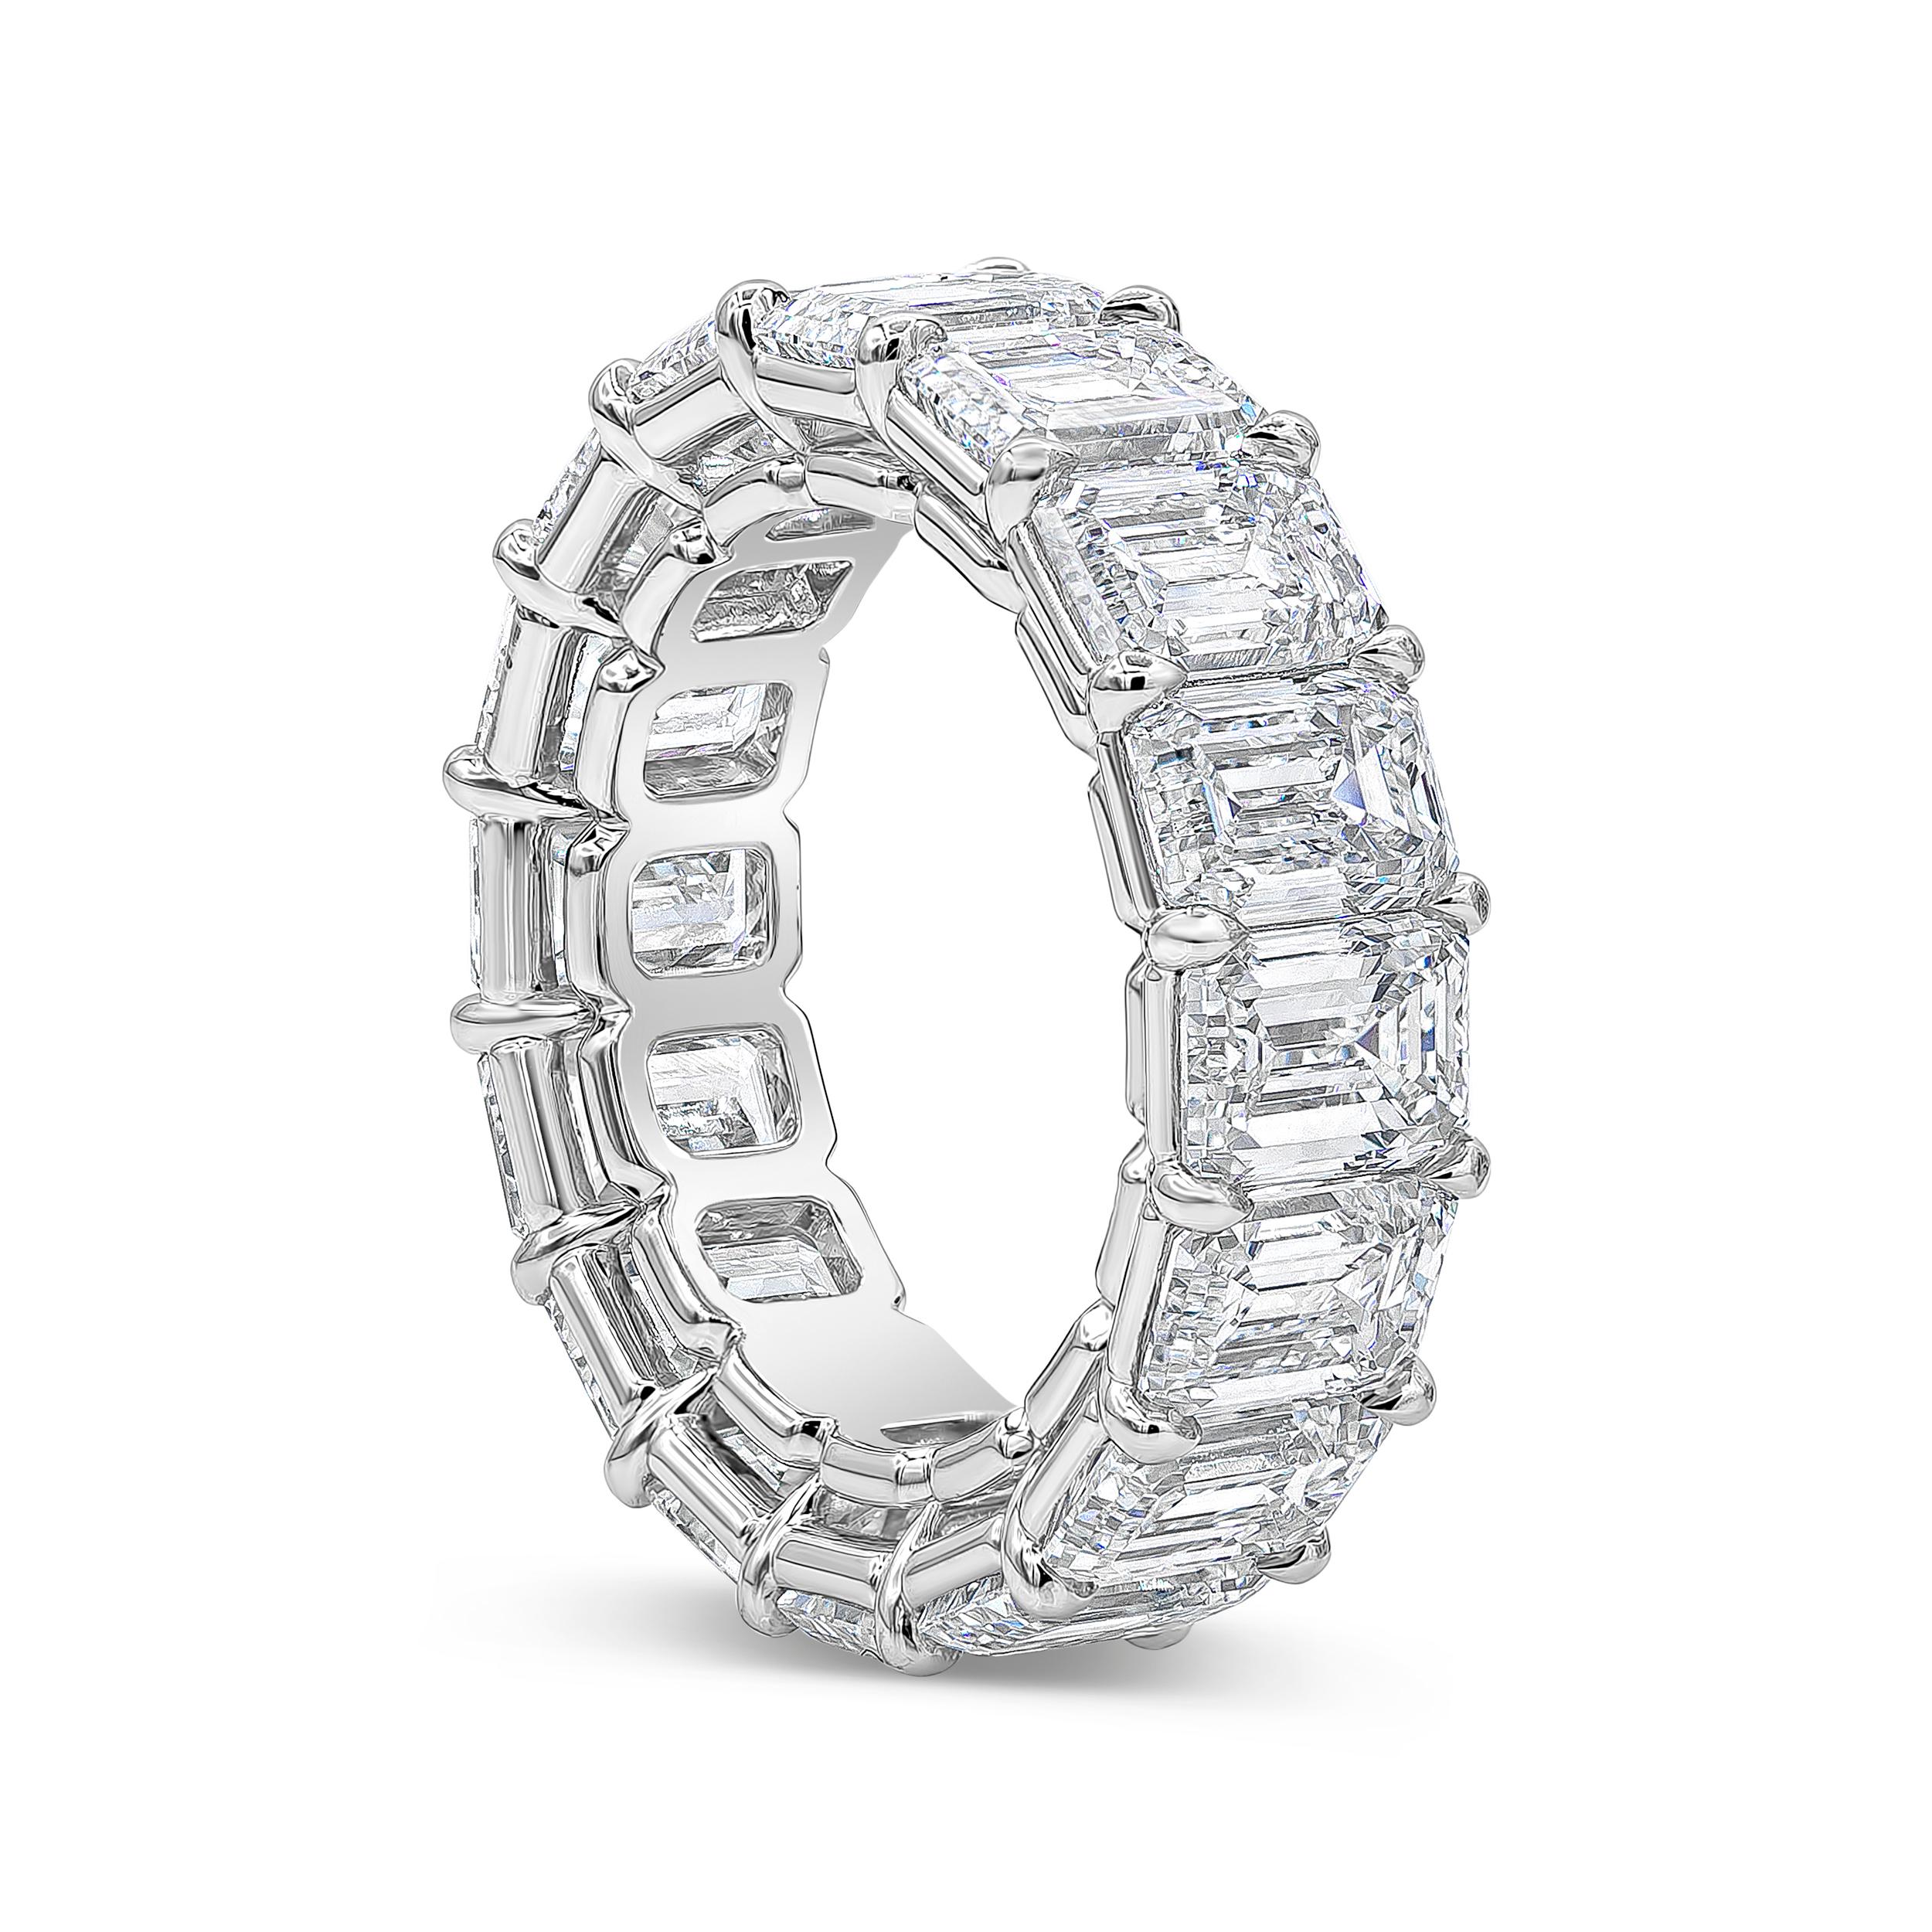 Ein Ehering in Kollektionsqualität mit Diamanten im Smaragdschliff mit einem Gesamtgewicht von 12,48 Karat, gefasst in einer offenen Galerie-Fassung aus Platin. Jedem Diamanten liegt ein GIA-Zertifikat bei, das besagt, dass der Diamant die Farbe G-H